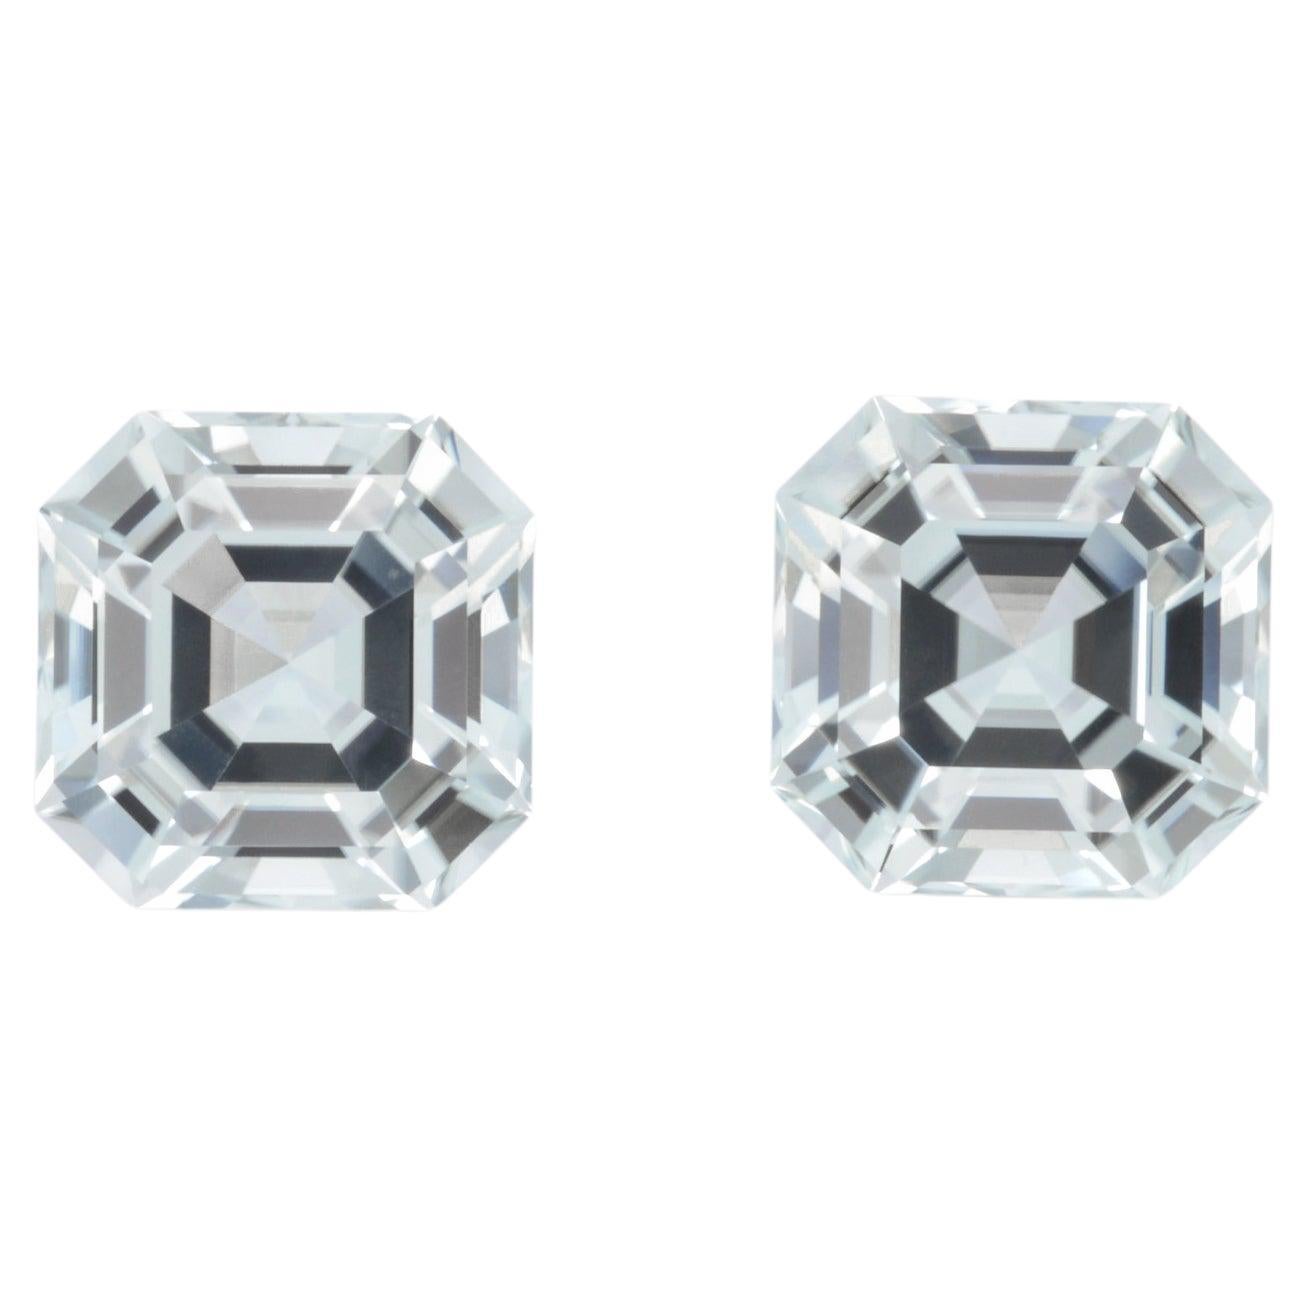 Tourmaline Earrings Gemstone Pair 11.26 Carat Unset Asscher Cut Loose Gems For Sale